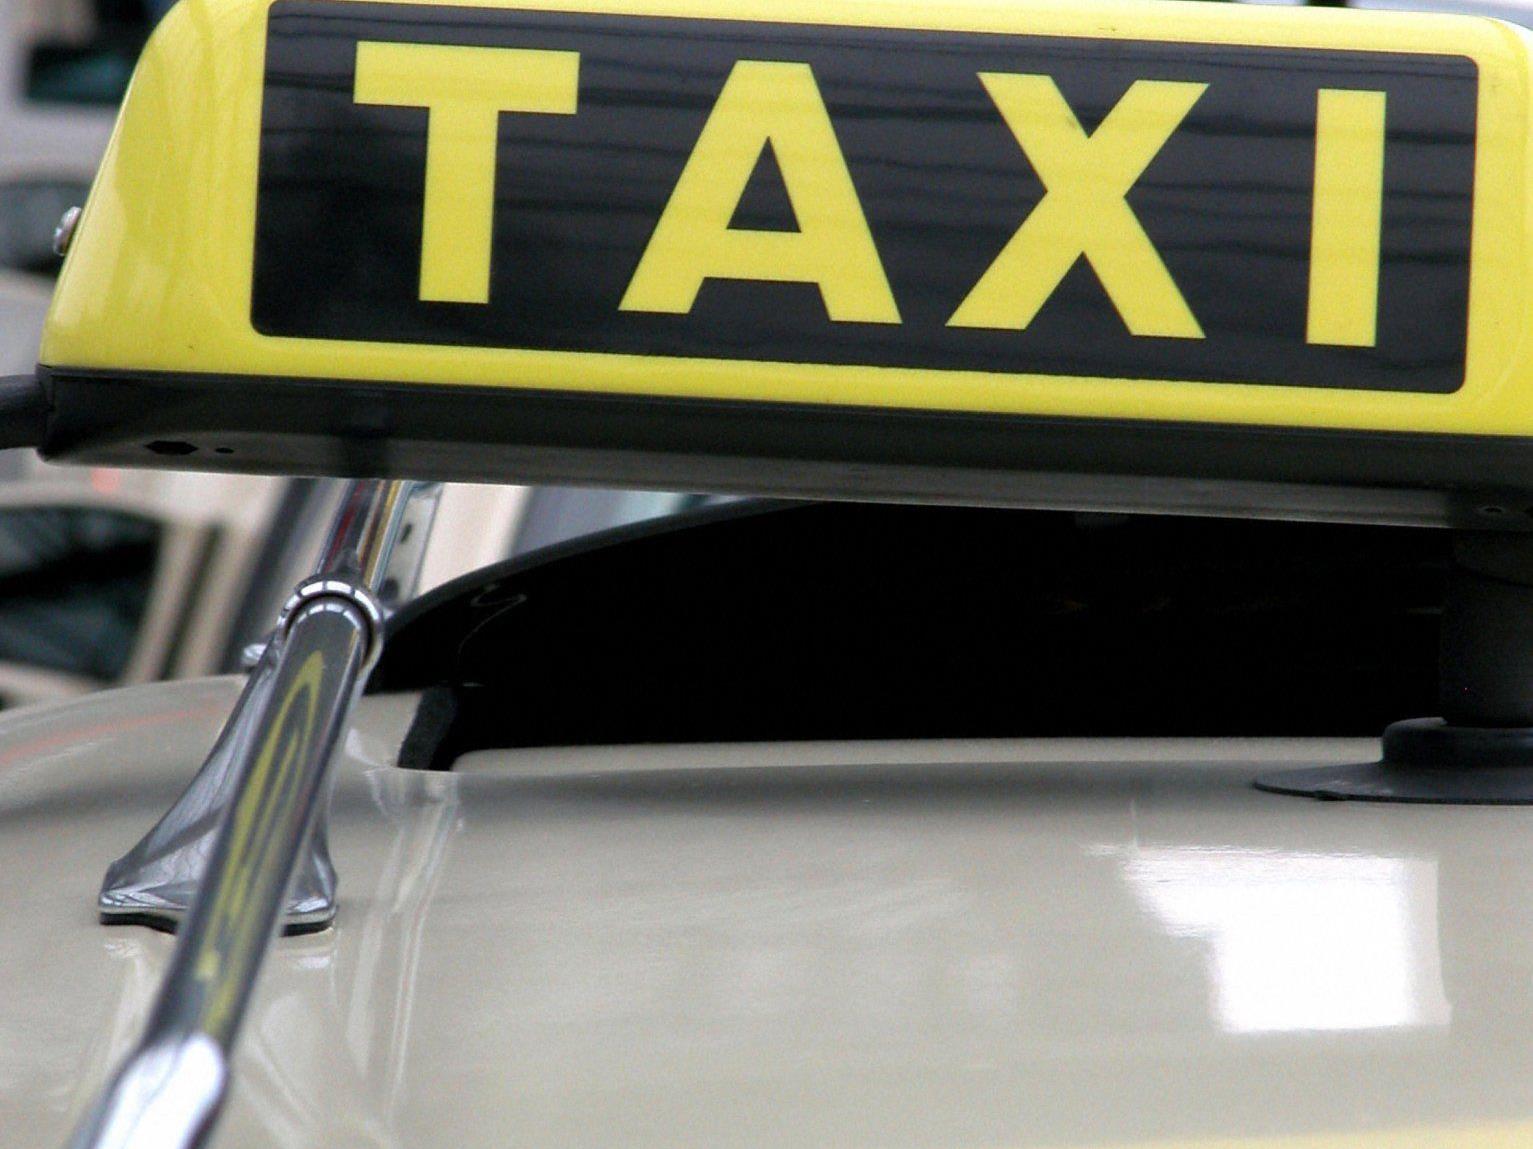 Gleich zehn Taxiüberfälle wurden dem Angeklagten zur Last gelegt